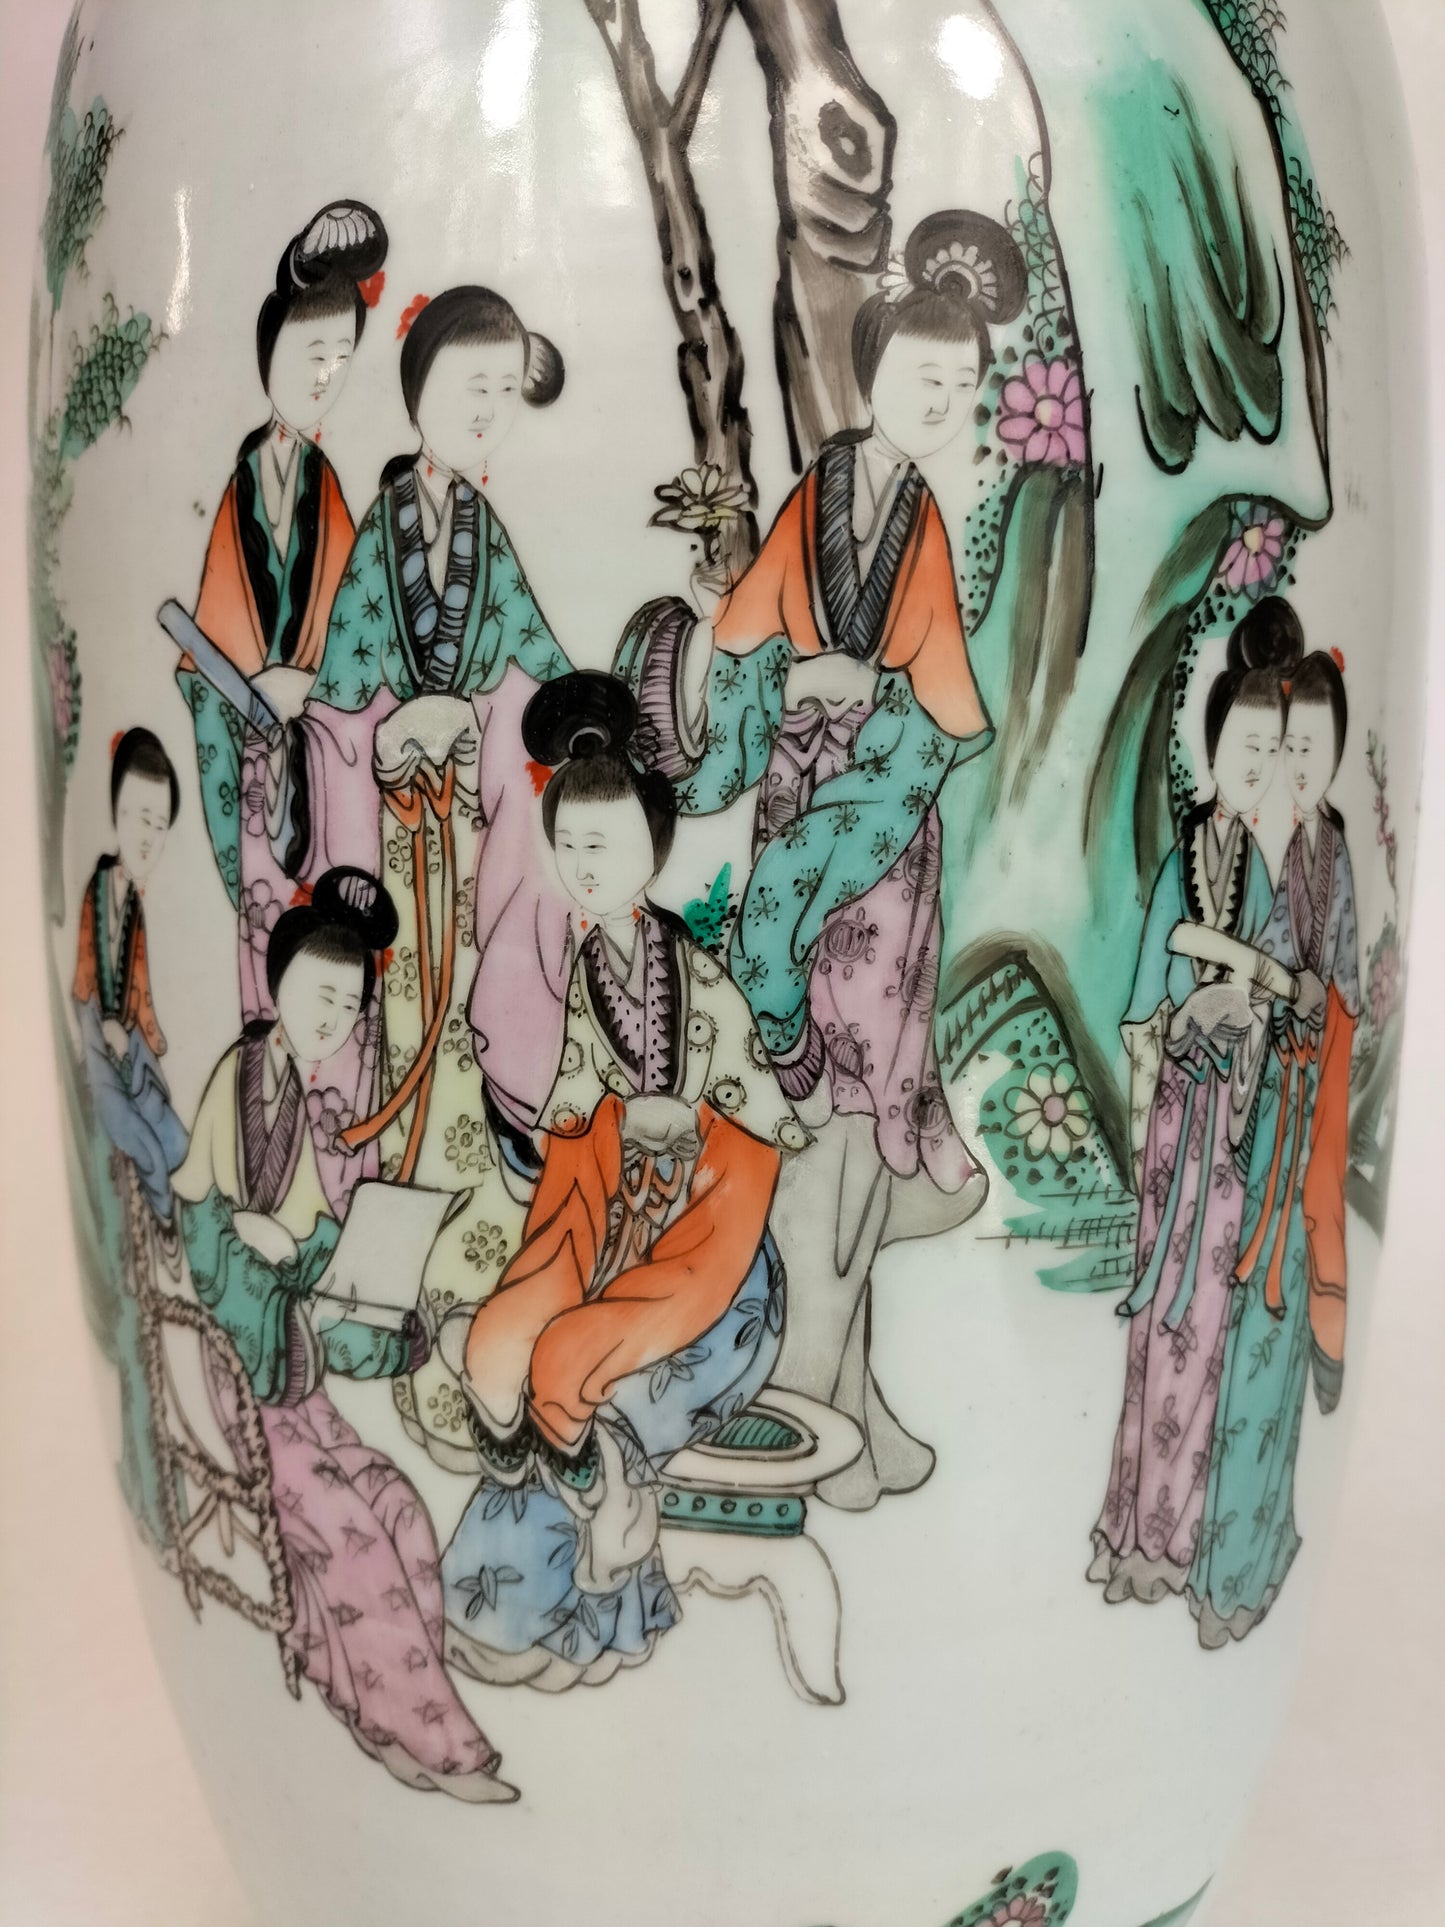 大型古董中国钱江花瓶，饰有花园场景 // 民国时期（1912-1949 年）